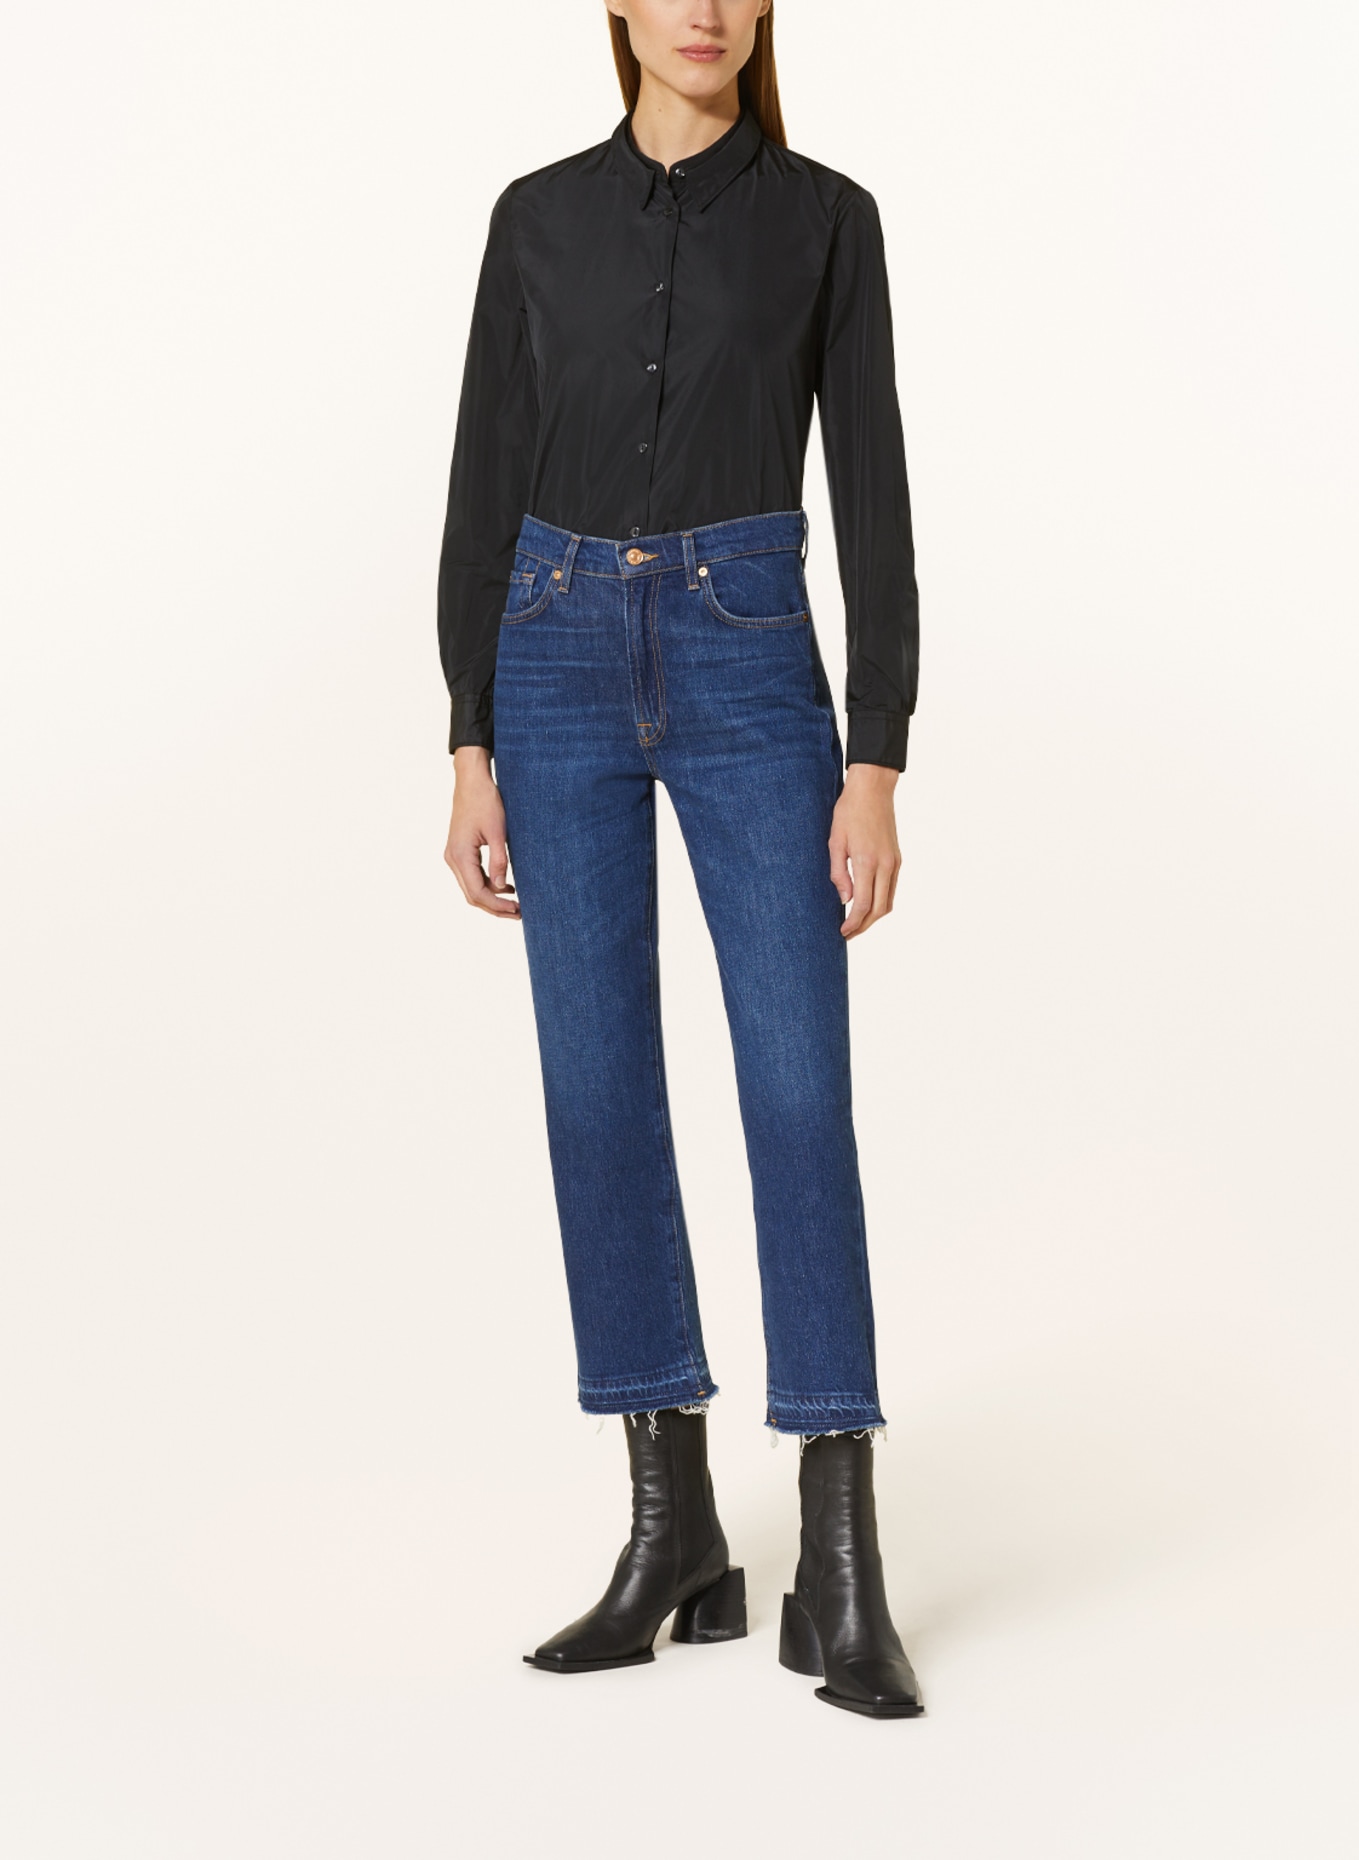 lilienfels Shirt blouse, Color: BLACK (Image 2)